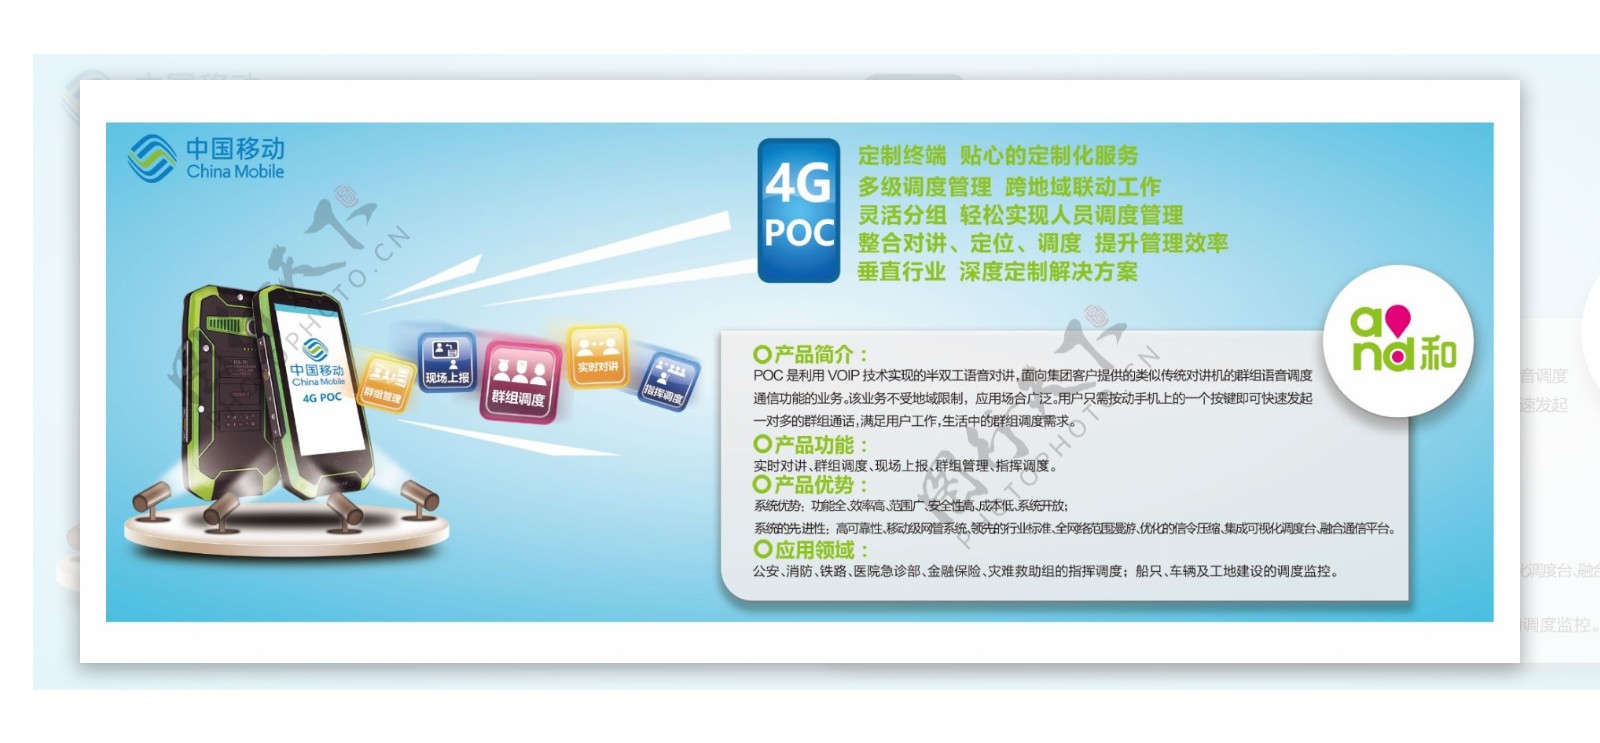 中国移动新科技4Gpoc海报